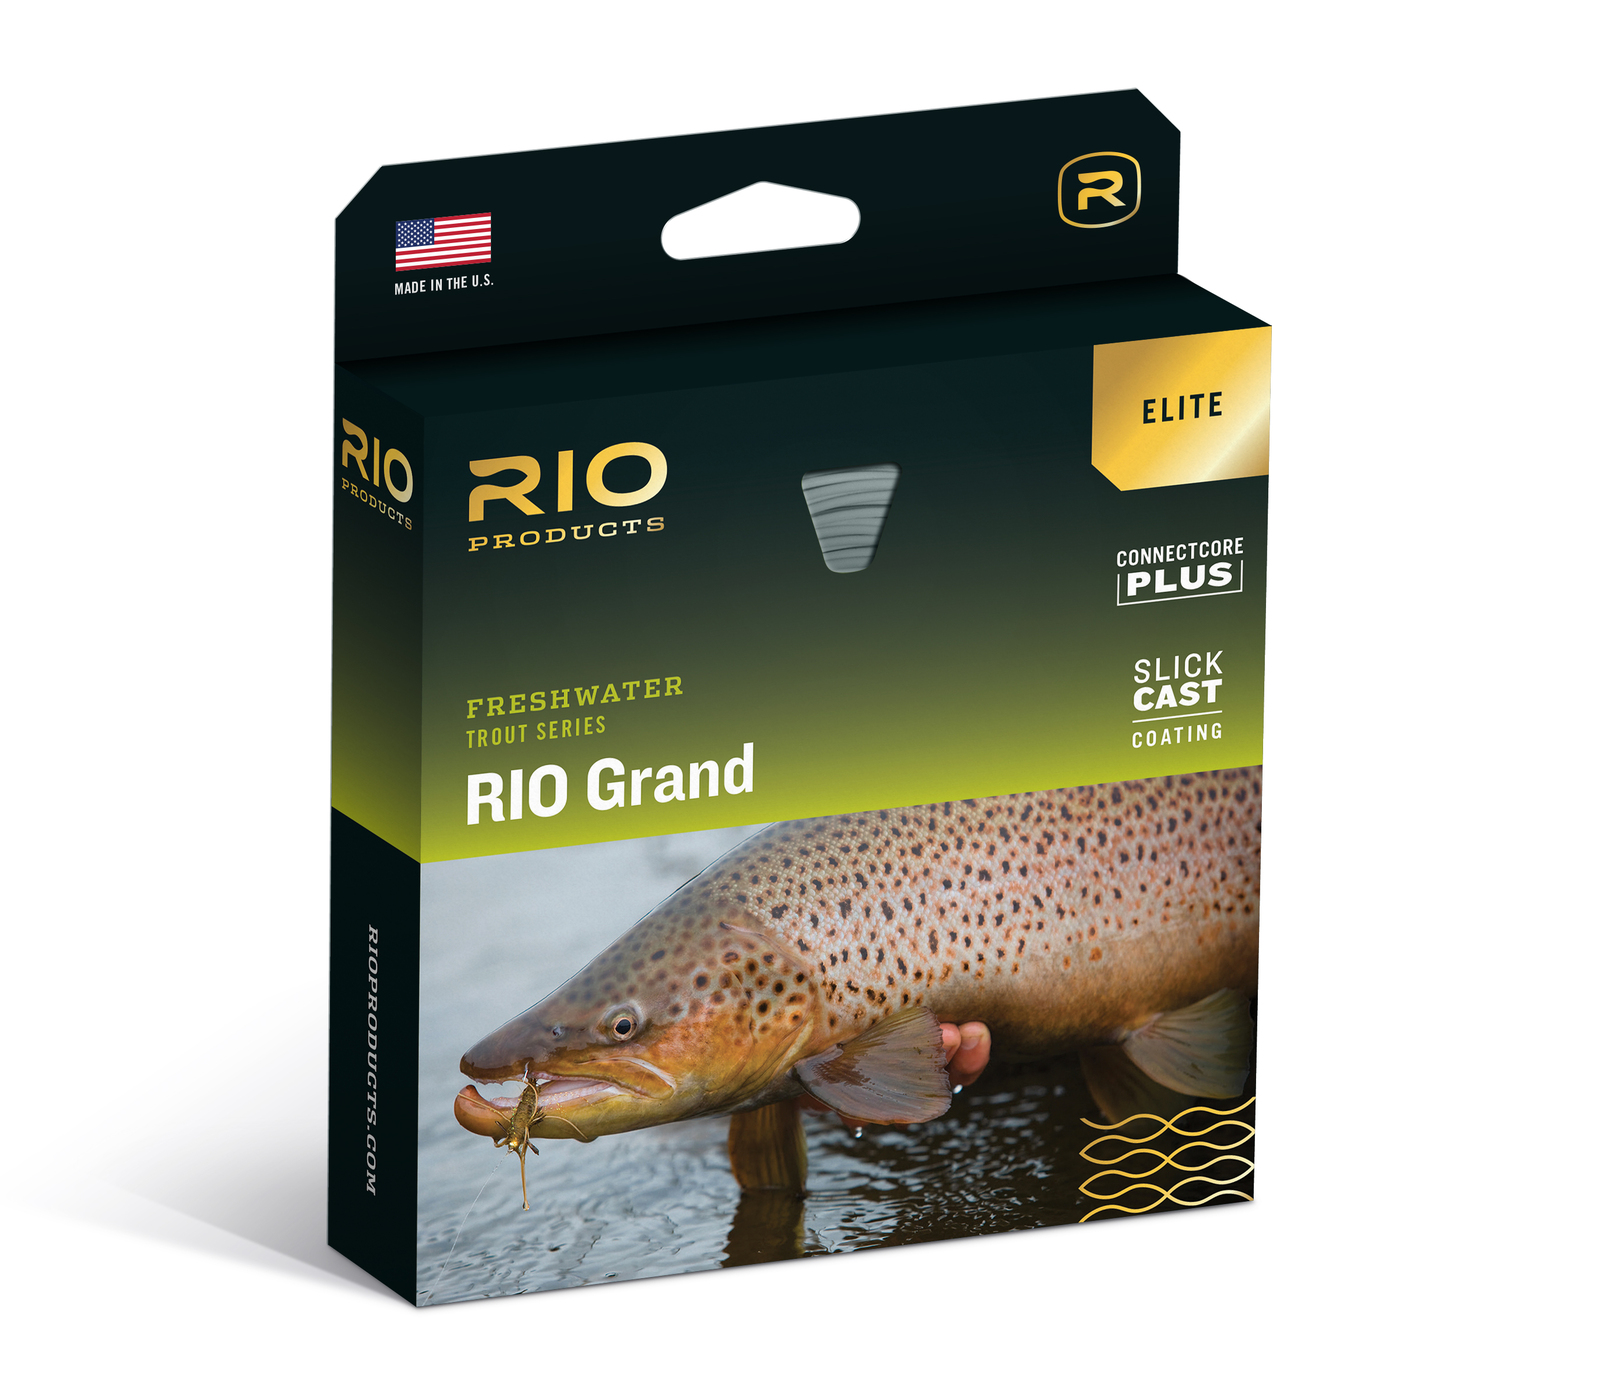 Rio Freshwater Trout Series Premier Rio Grand